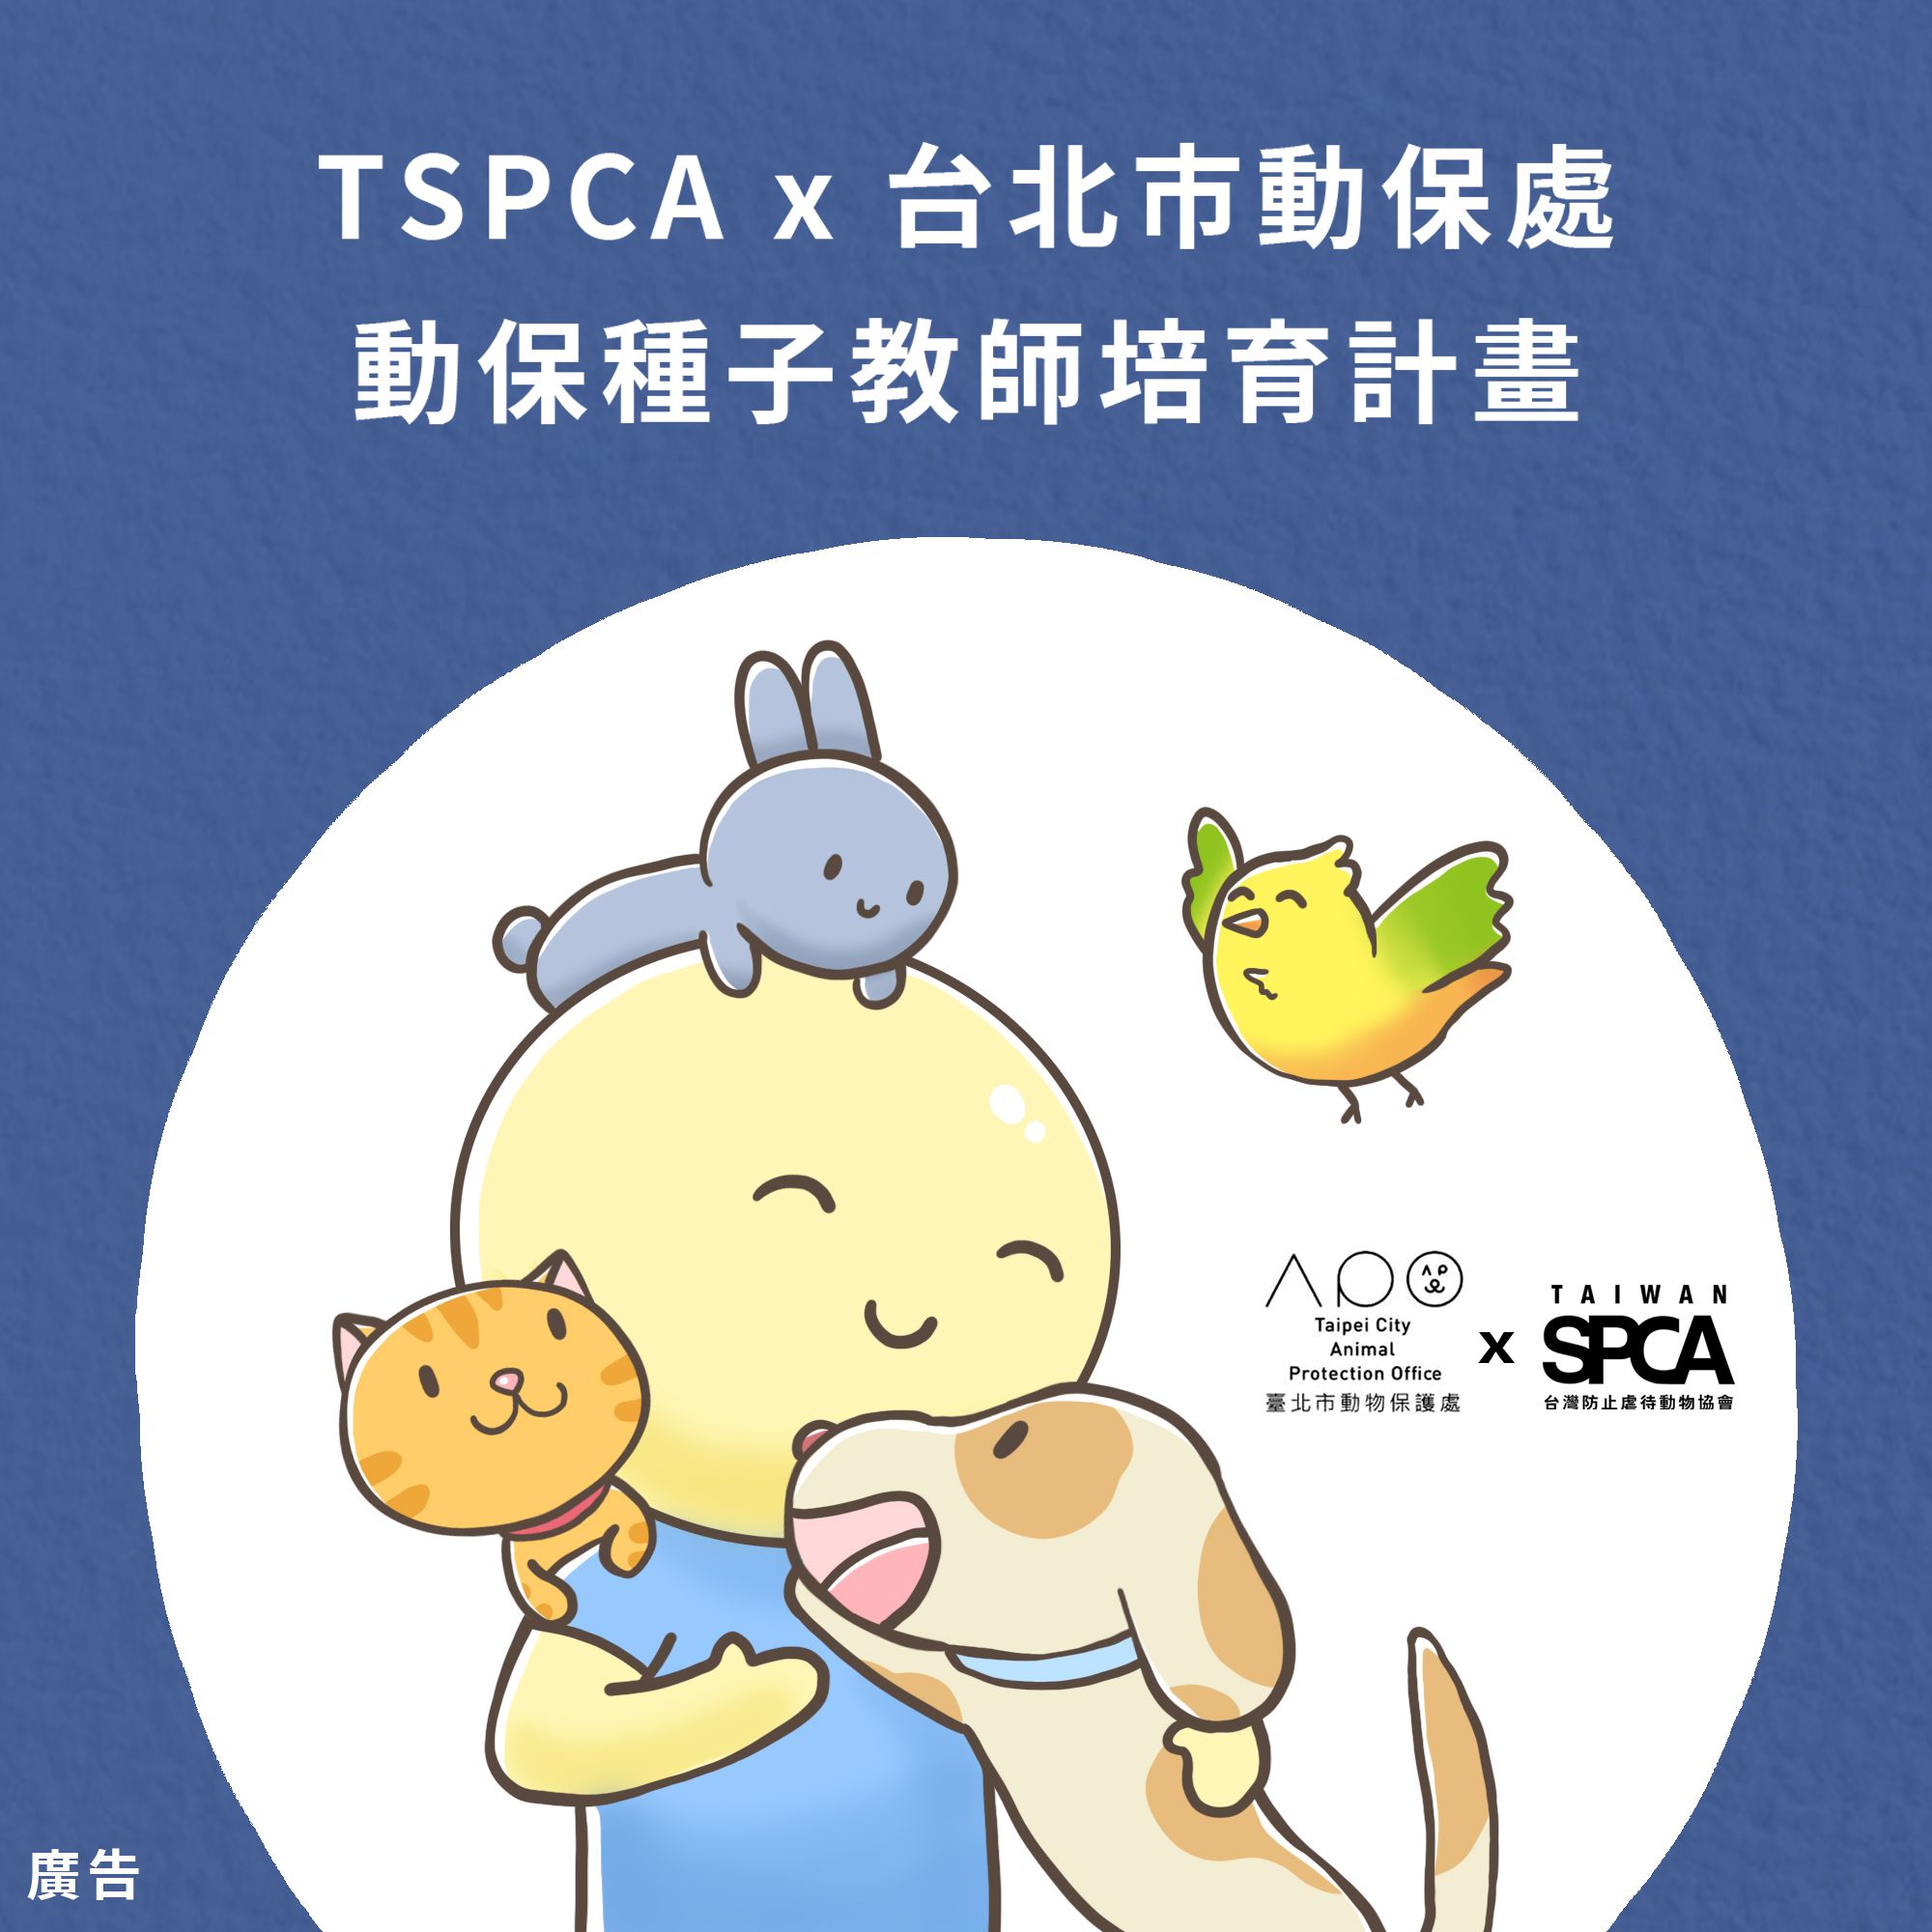 TSPCA X 台北市動保處 2020動物保護種子教師培育計畫